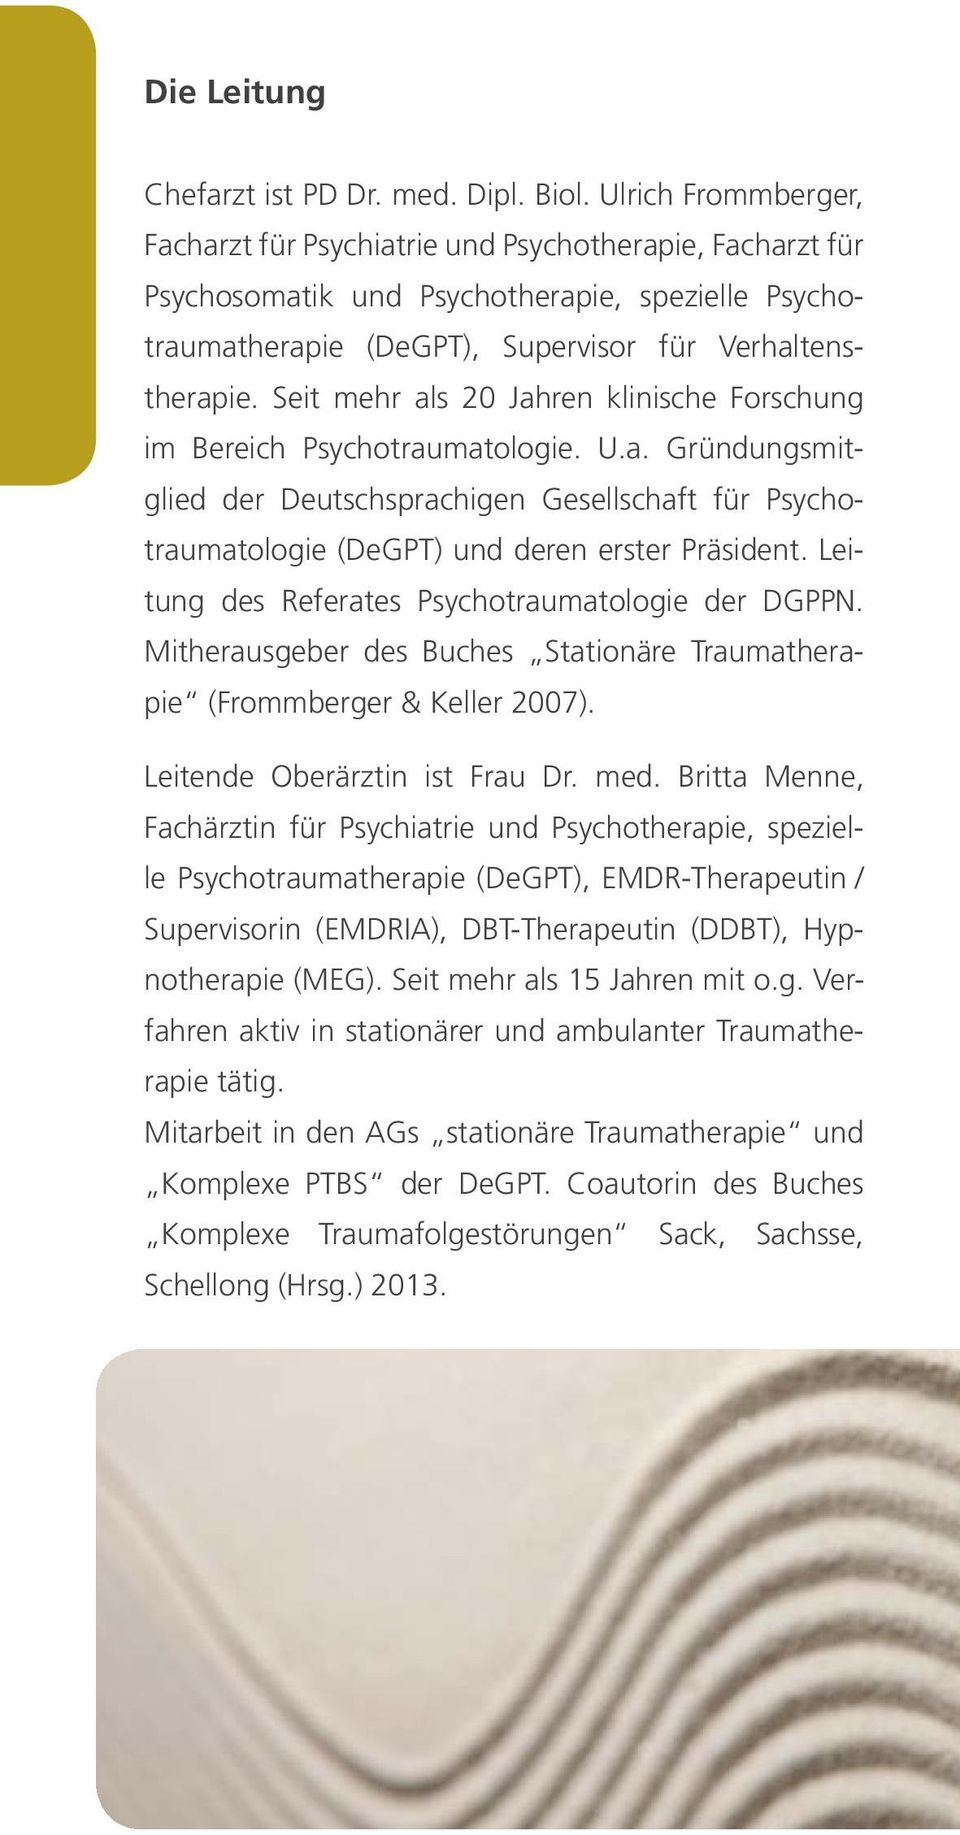 Seit mehr als 20 Jahren klinische Forschung im Bereich Psychotraumatologie. U.a. Gründungsmitglied der Deutschsprachigen Gesellschaft für Psychotraumatologie (DeGPT) und deren erster Präsident.